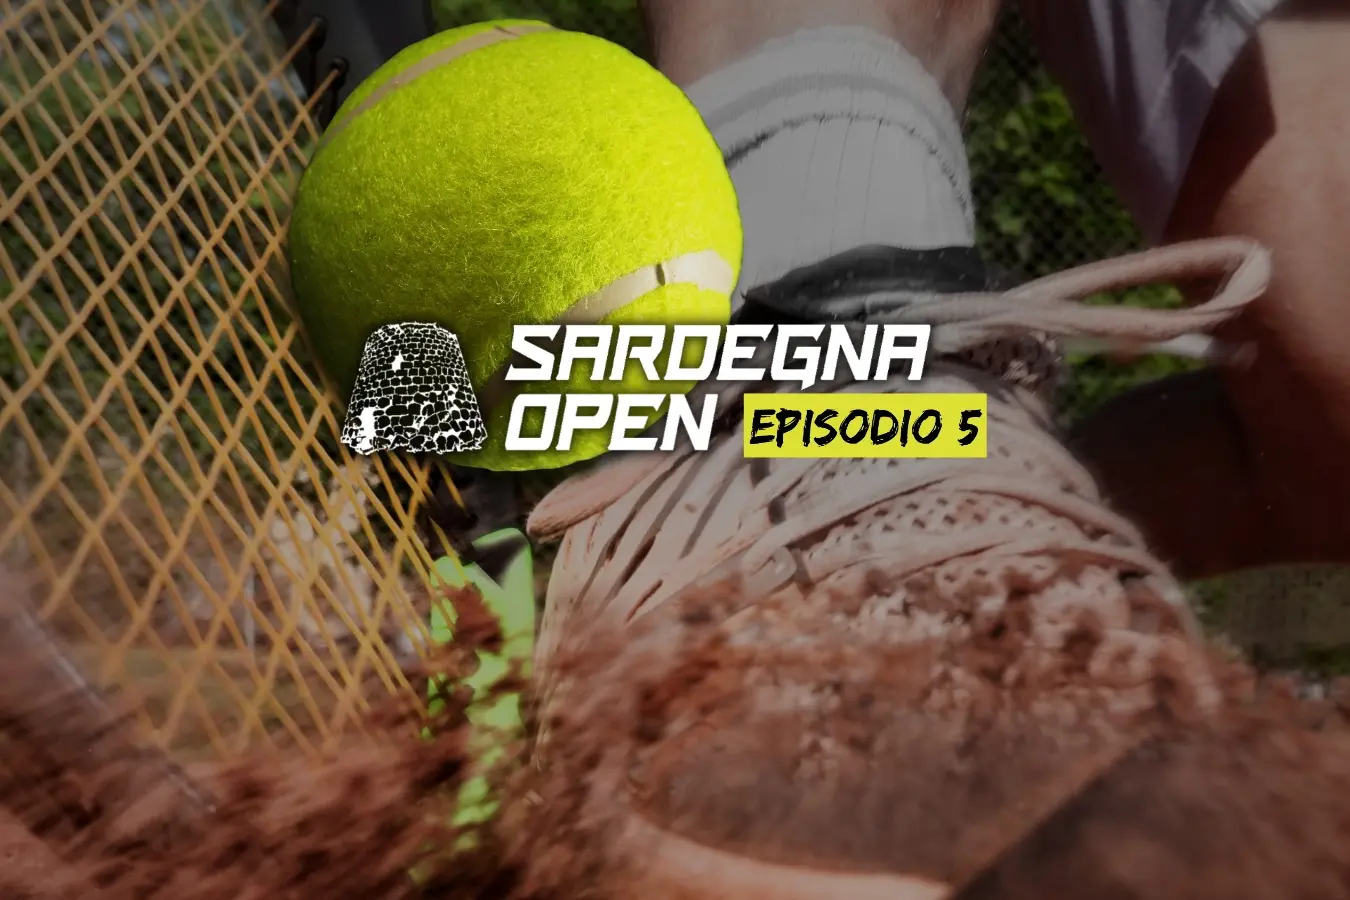 Sardegna Open, episodio 5